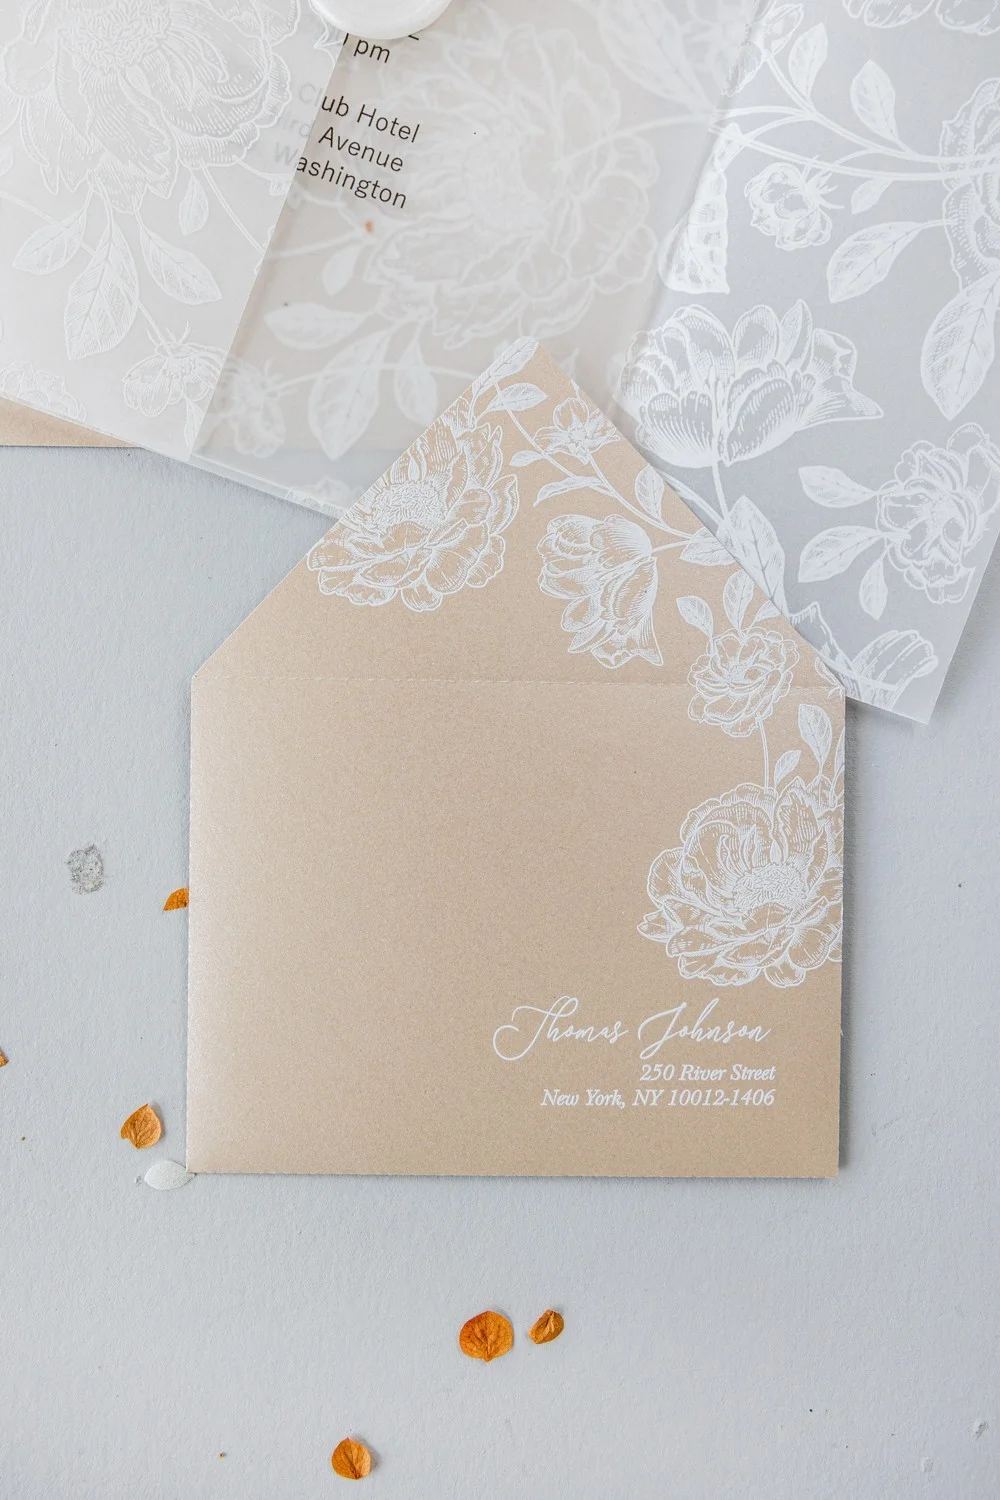 Acryl oder Glas Hochzeitseinladung, Beige Hochzeitseinladungen, klare Hochzeitseinladung mit weißen Blumen